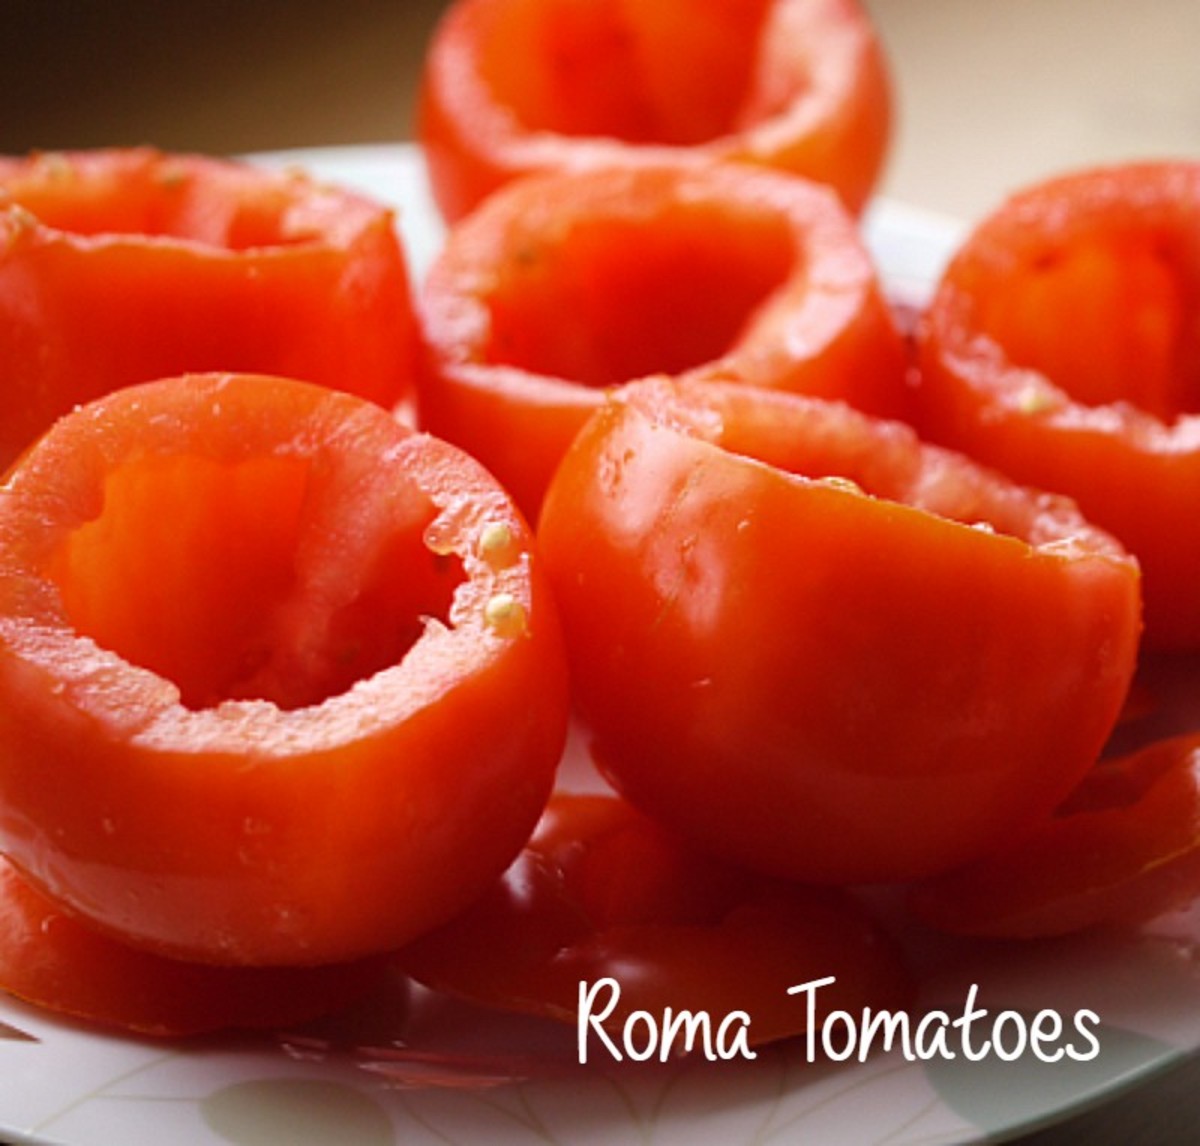 Slow-roasted roma tomatoes